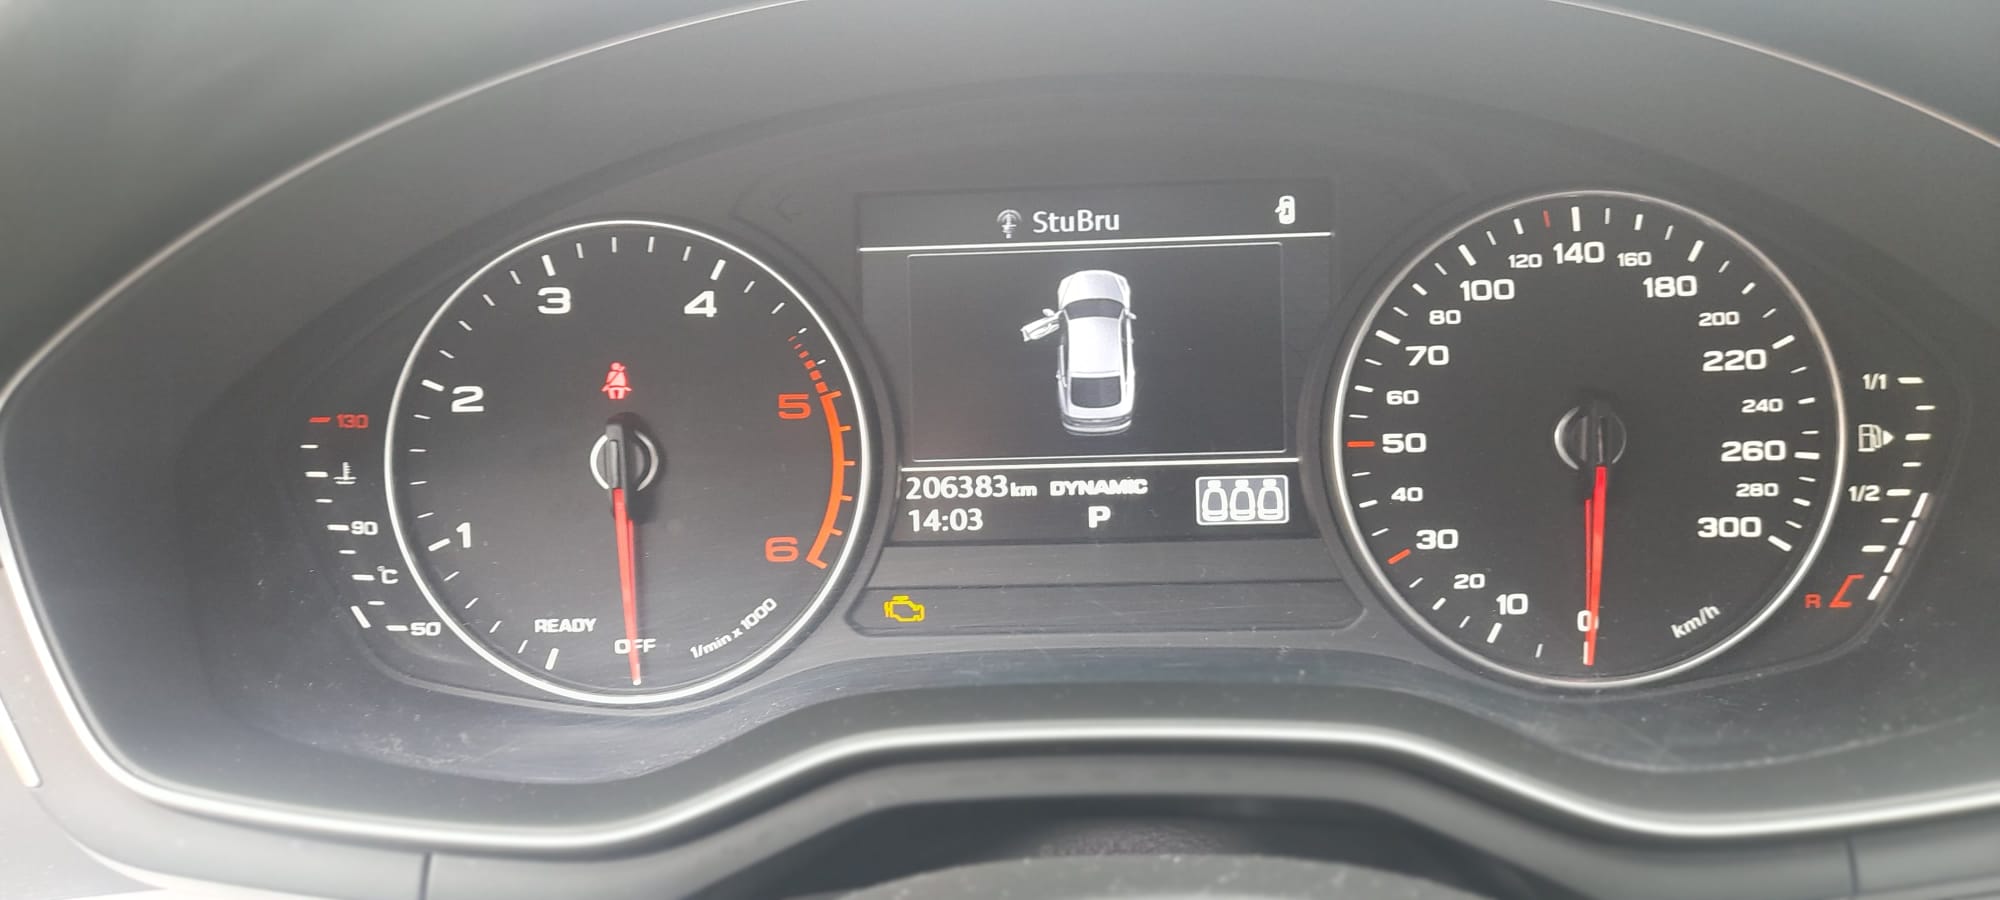 Personenwagen Audi; Bouwjaar 2018; 206383km motor Euro 6B